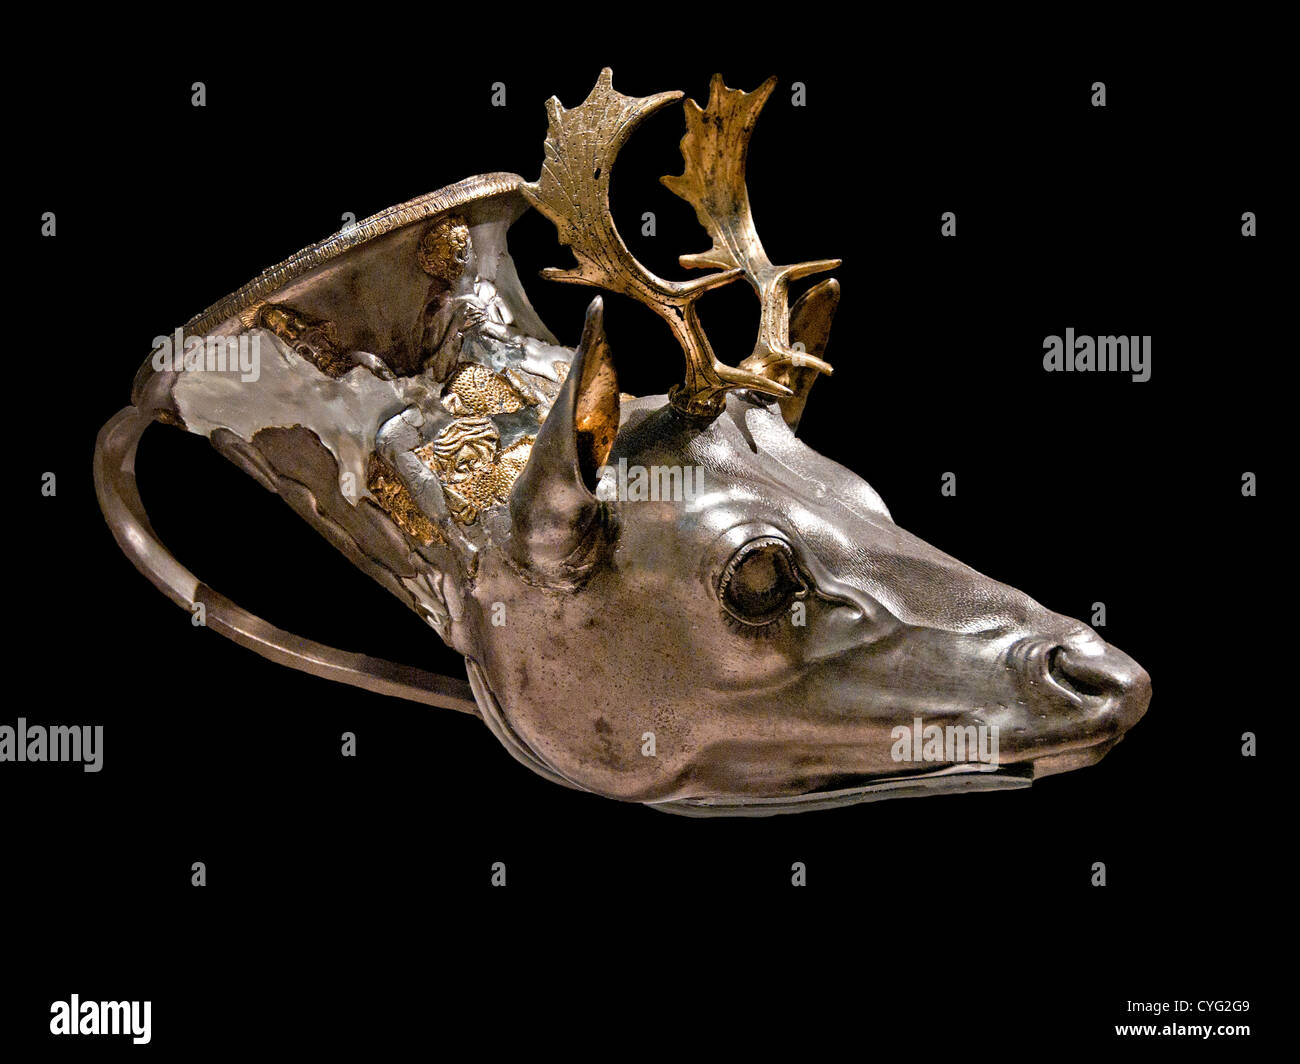 Plata dorada libación rhyton recipiente en forma de una cabeza de ciervo Griego Clásico Tardío o comienzos del siglo IV A.C. Helenística Grecia Foto de stock